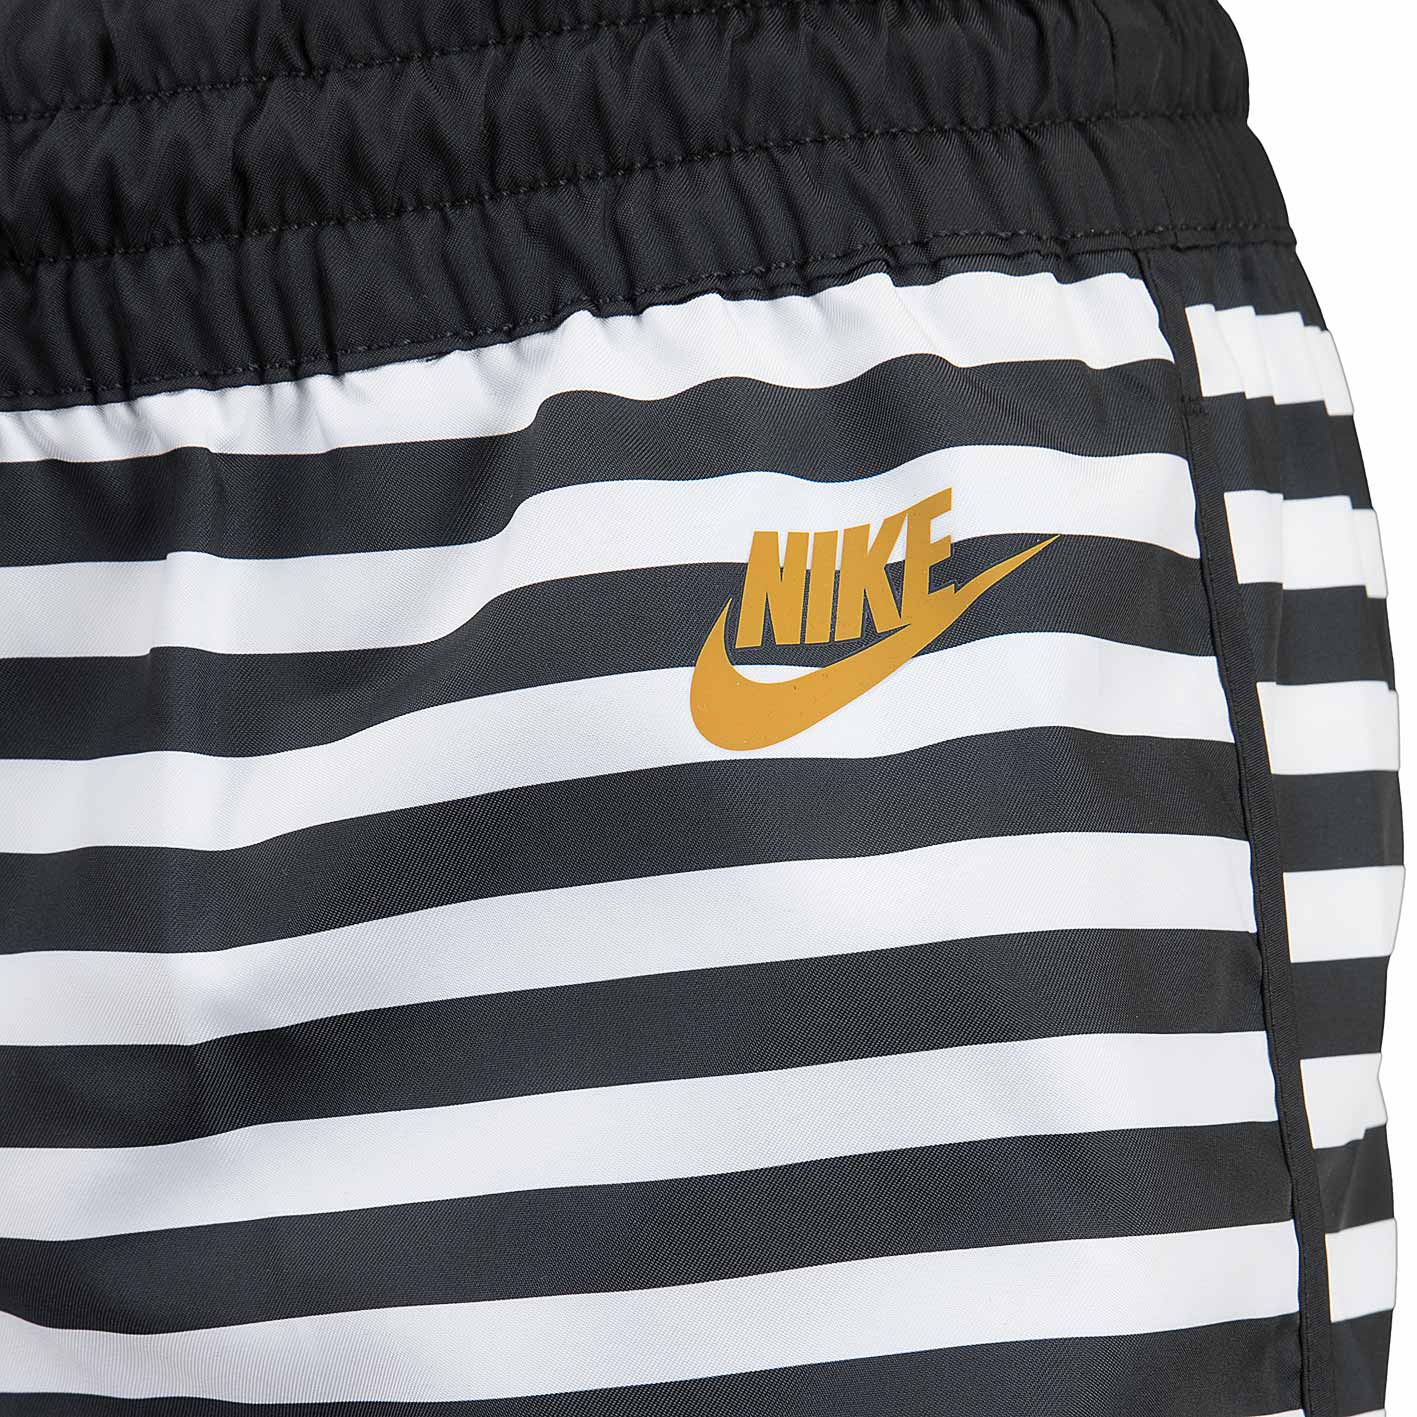 ☆ Nike Damen Shorts Woven weiß/schwarz - hier bestellen!